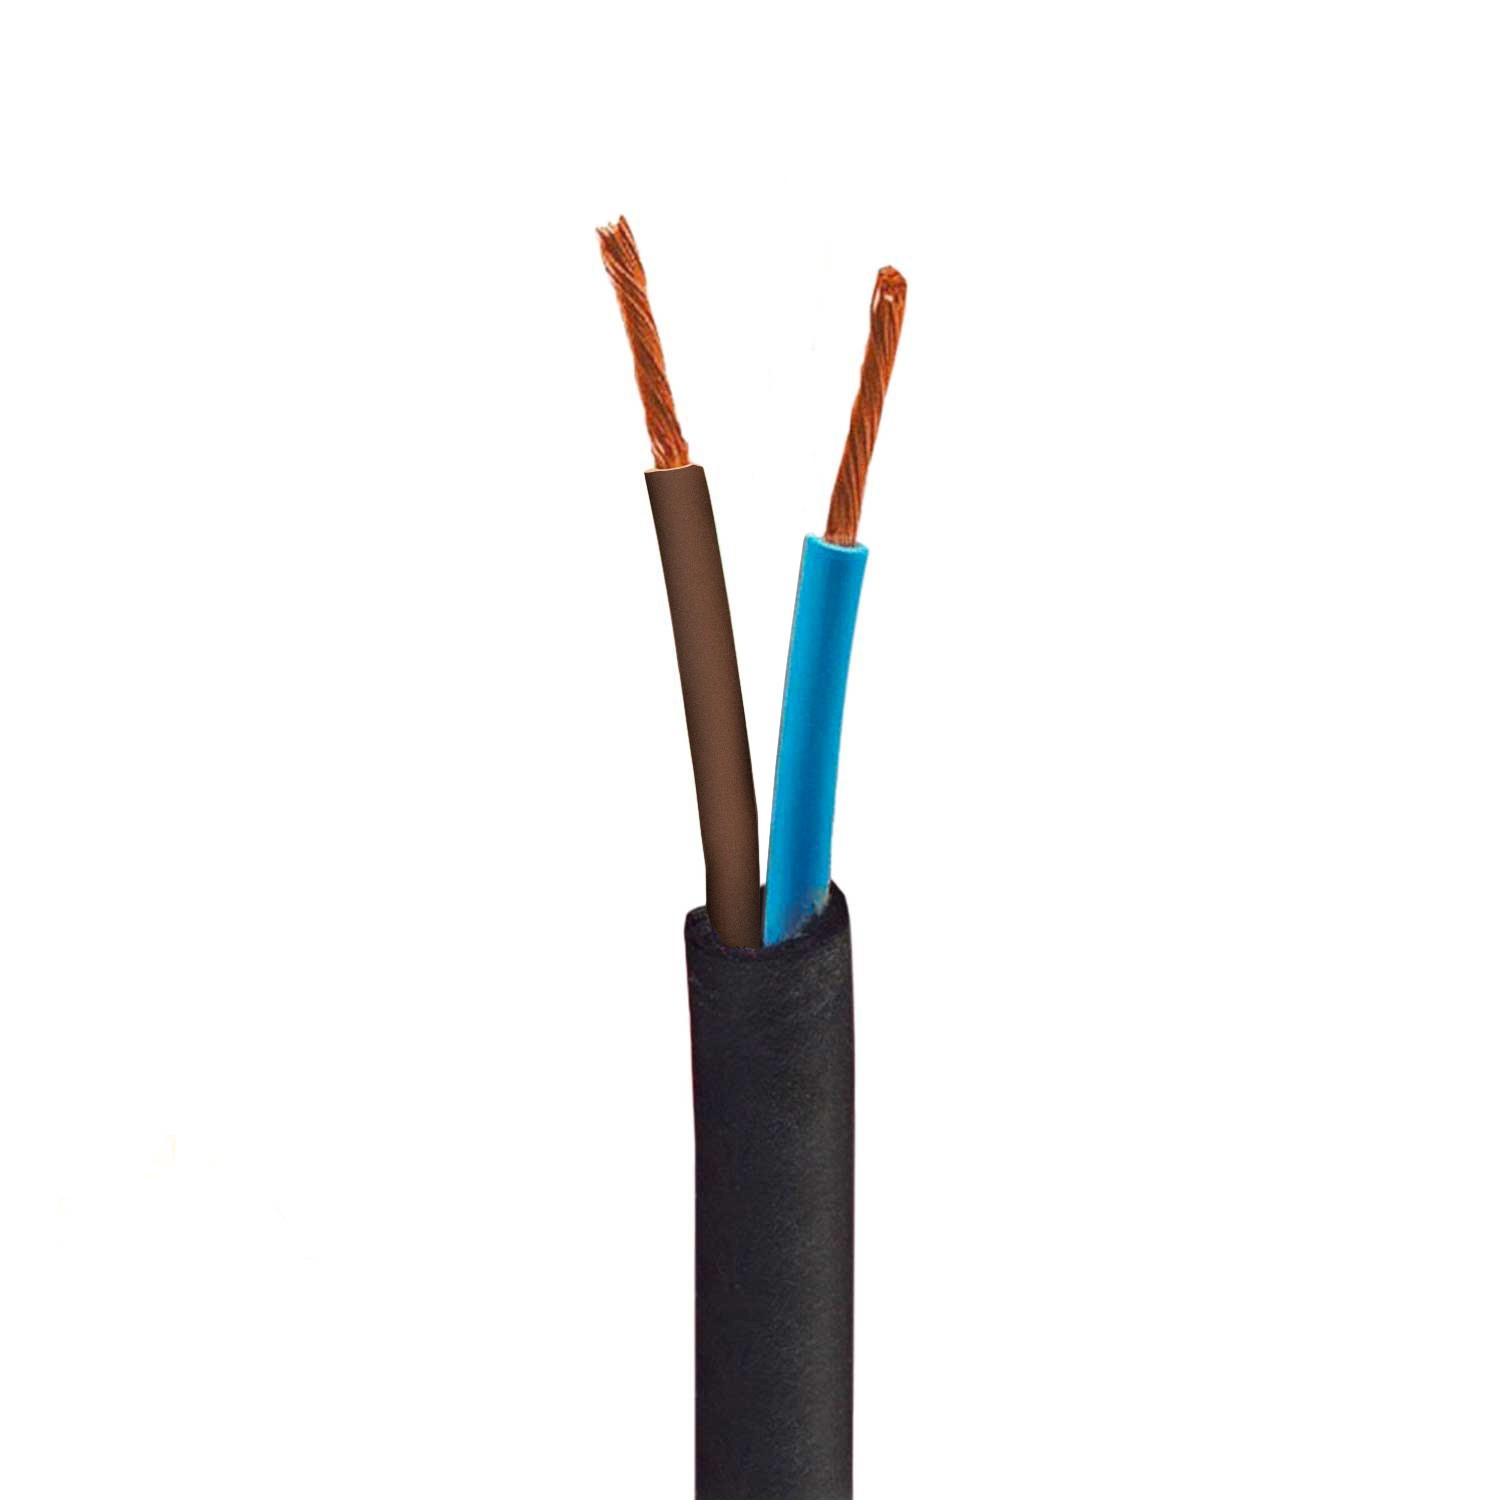 Kulatý elektrický kabel odolný proti UV záření v přírodní hnědé SN04 pro venkovní použití - kompatibilní s Eiva Outdoor IP65